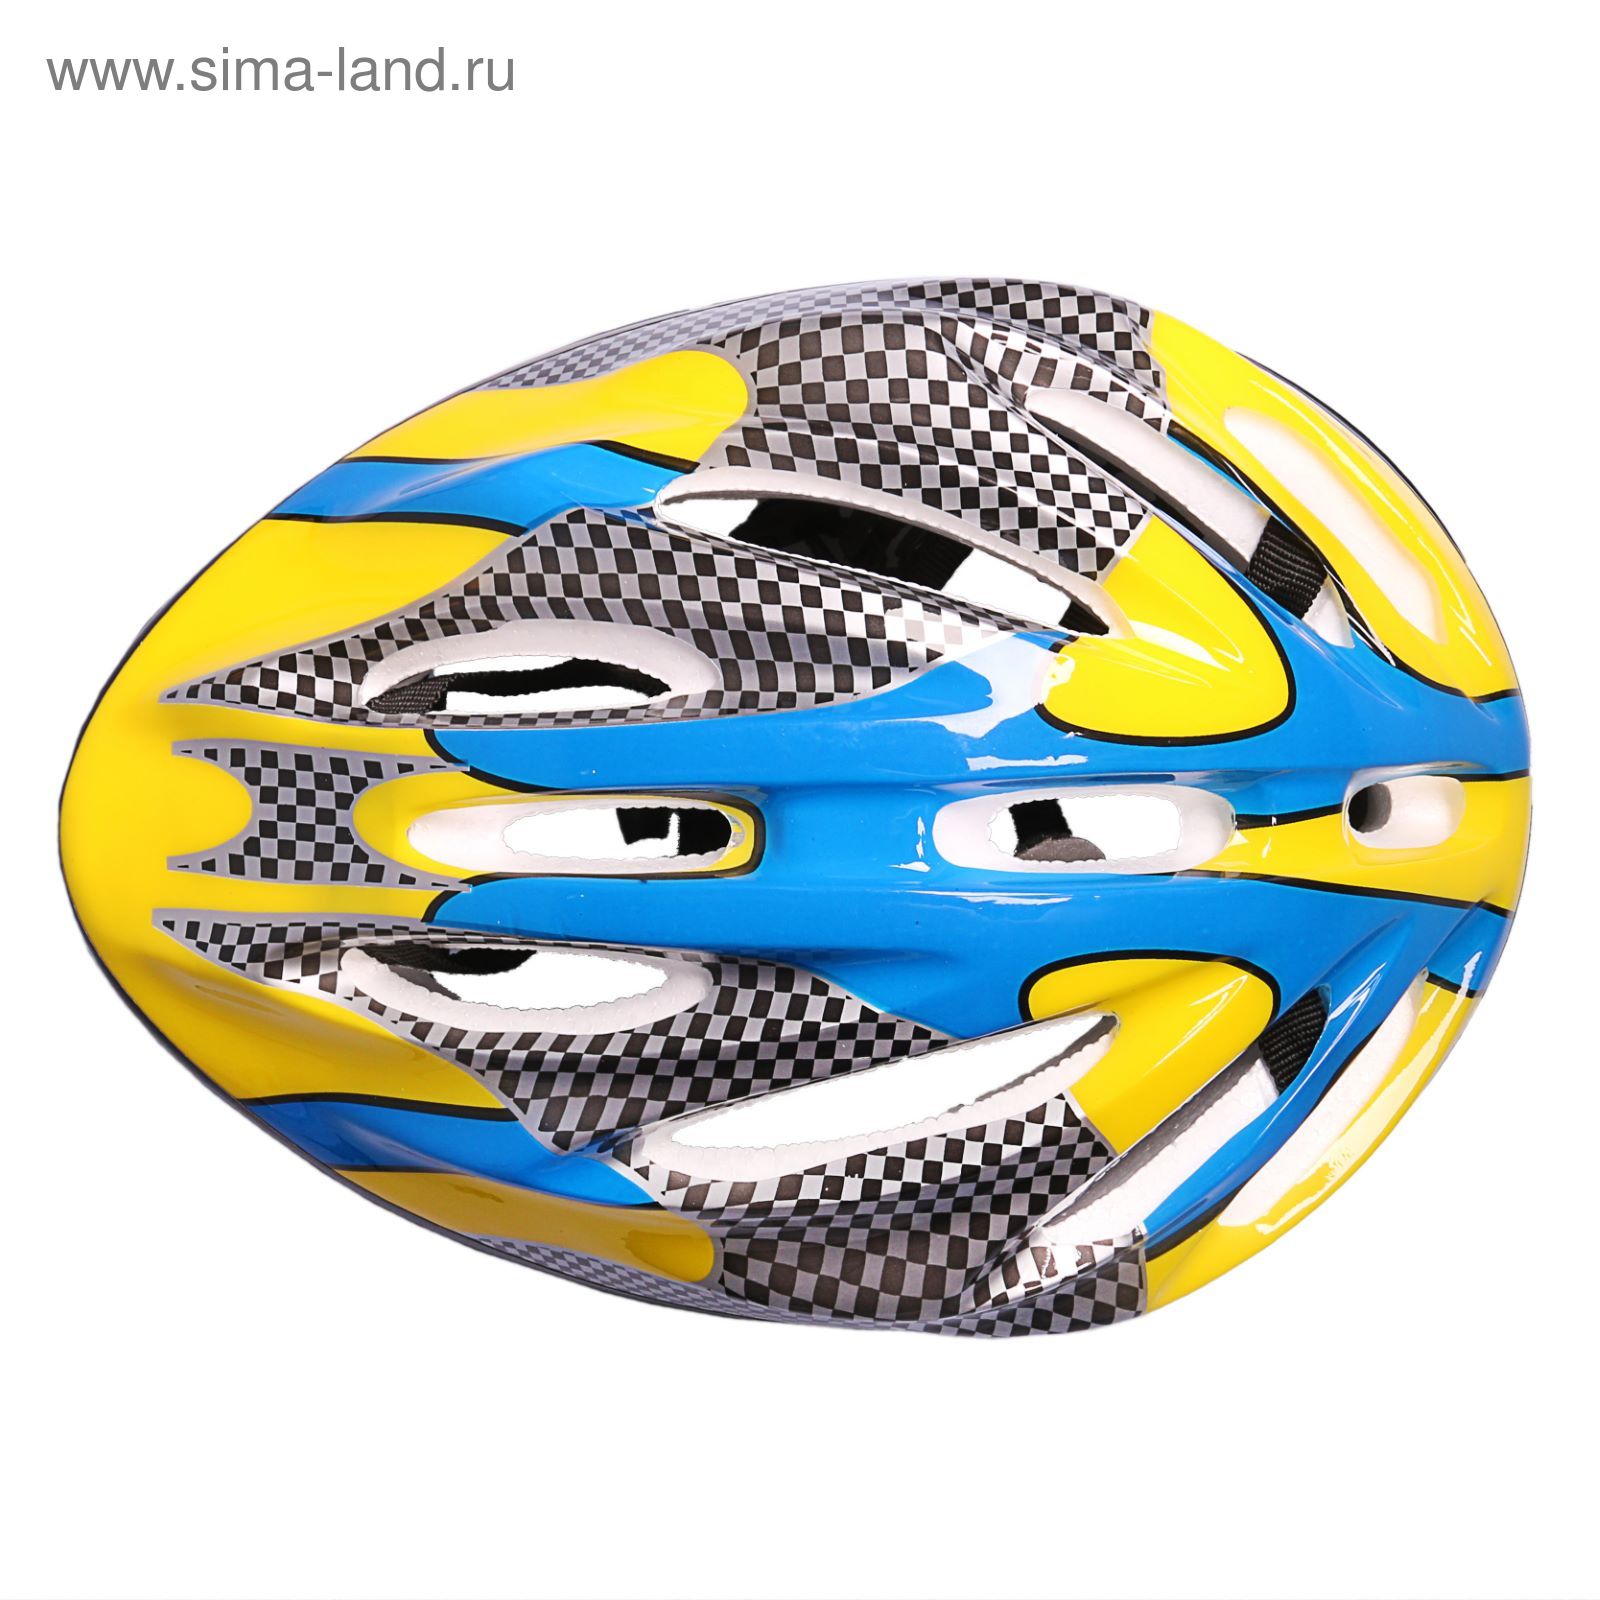 Шлем велосипедиста взрослый ОТ-11, размер L (56-58 см), цвет: желто-синий